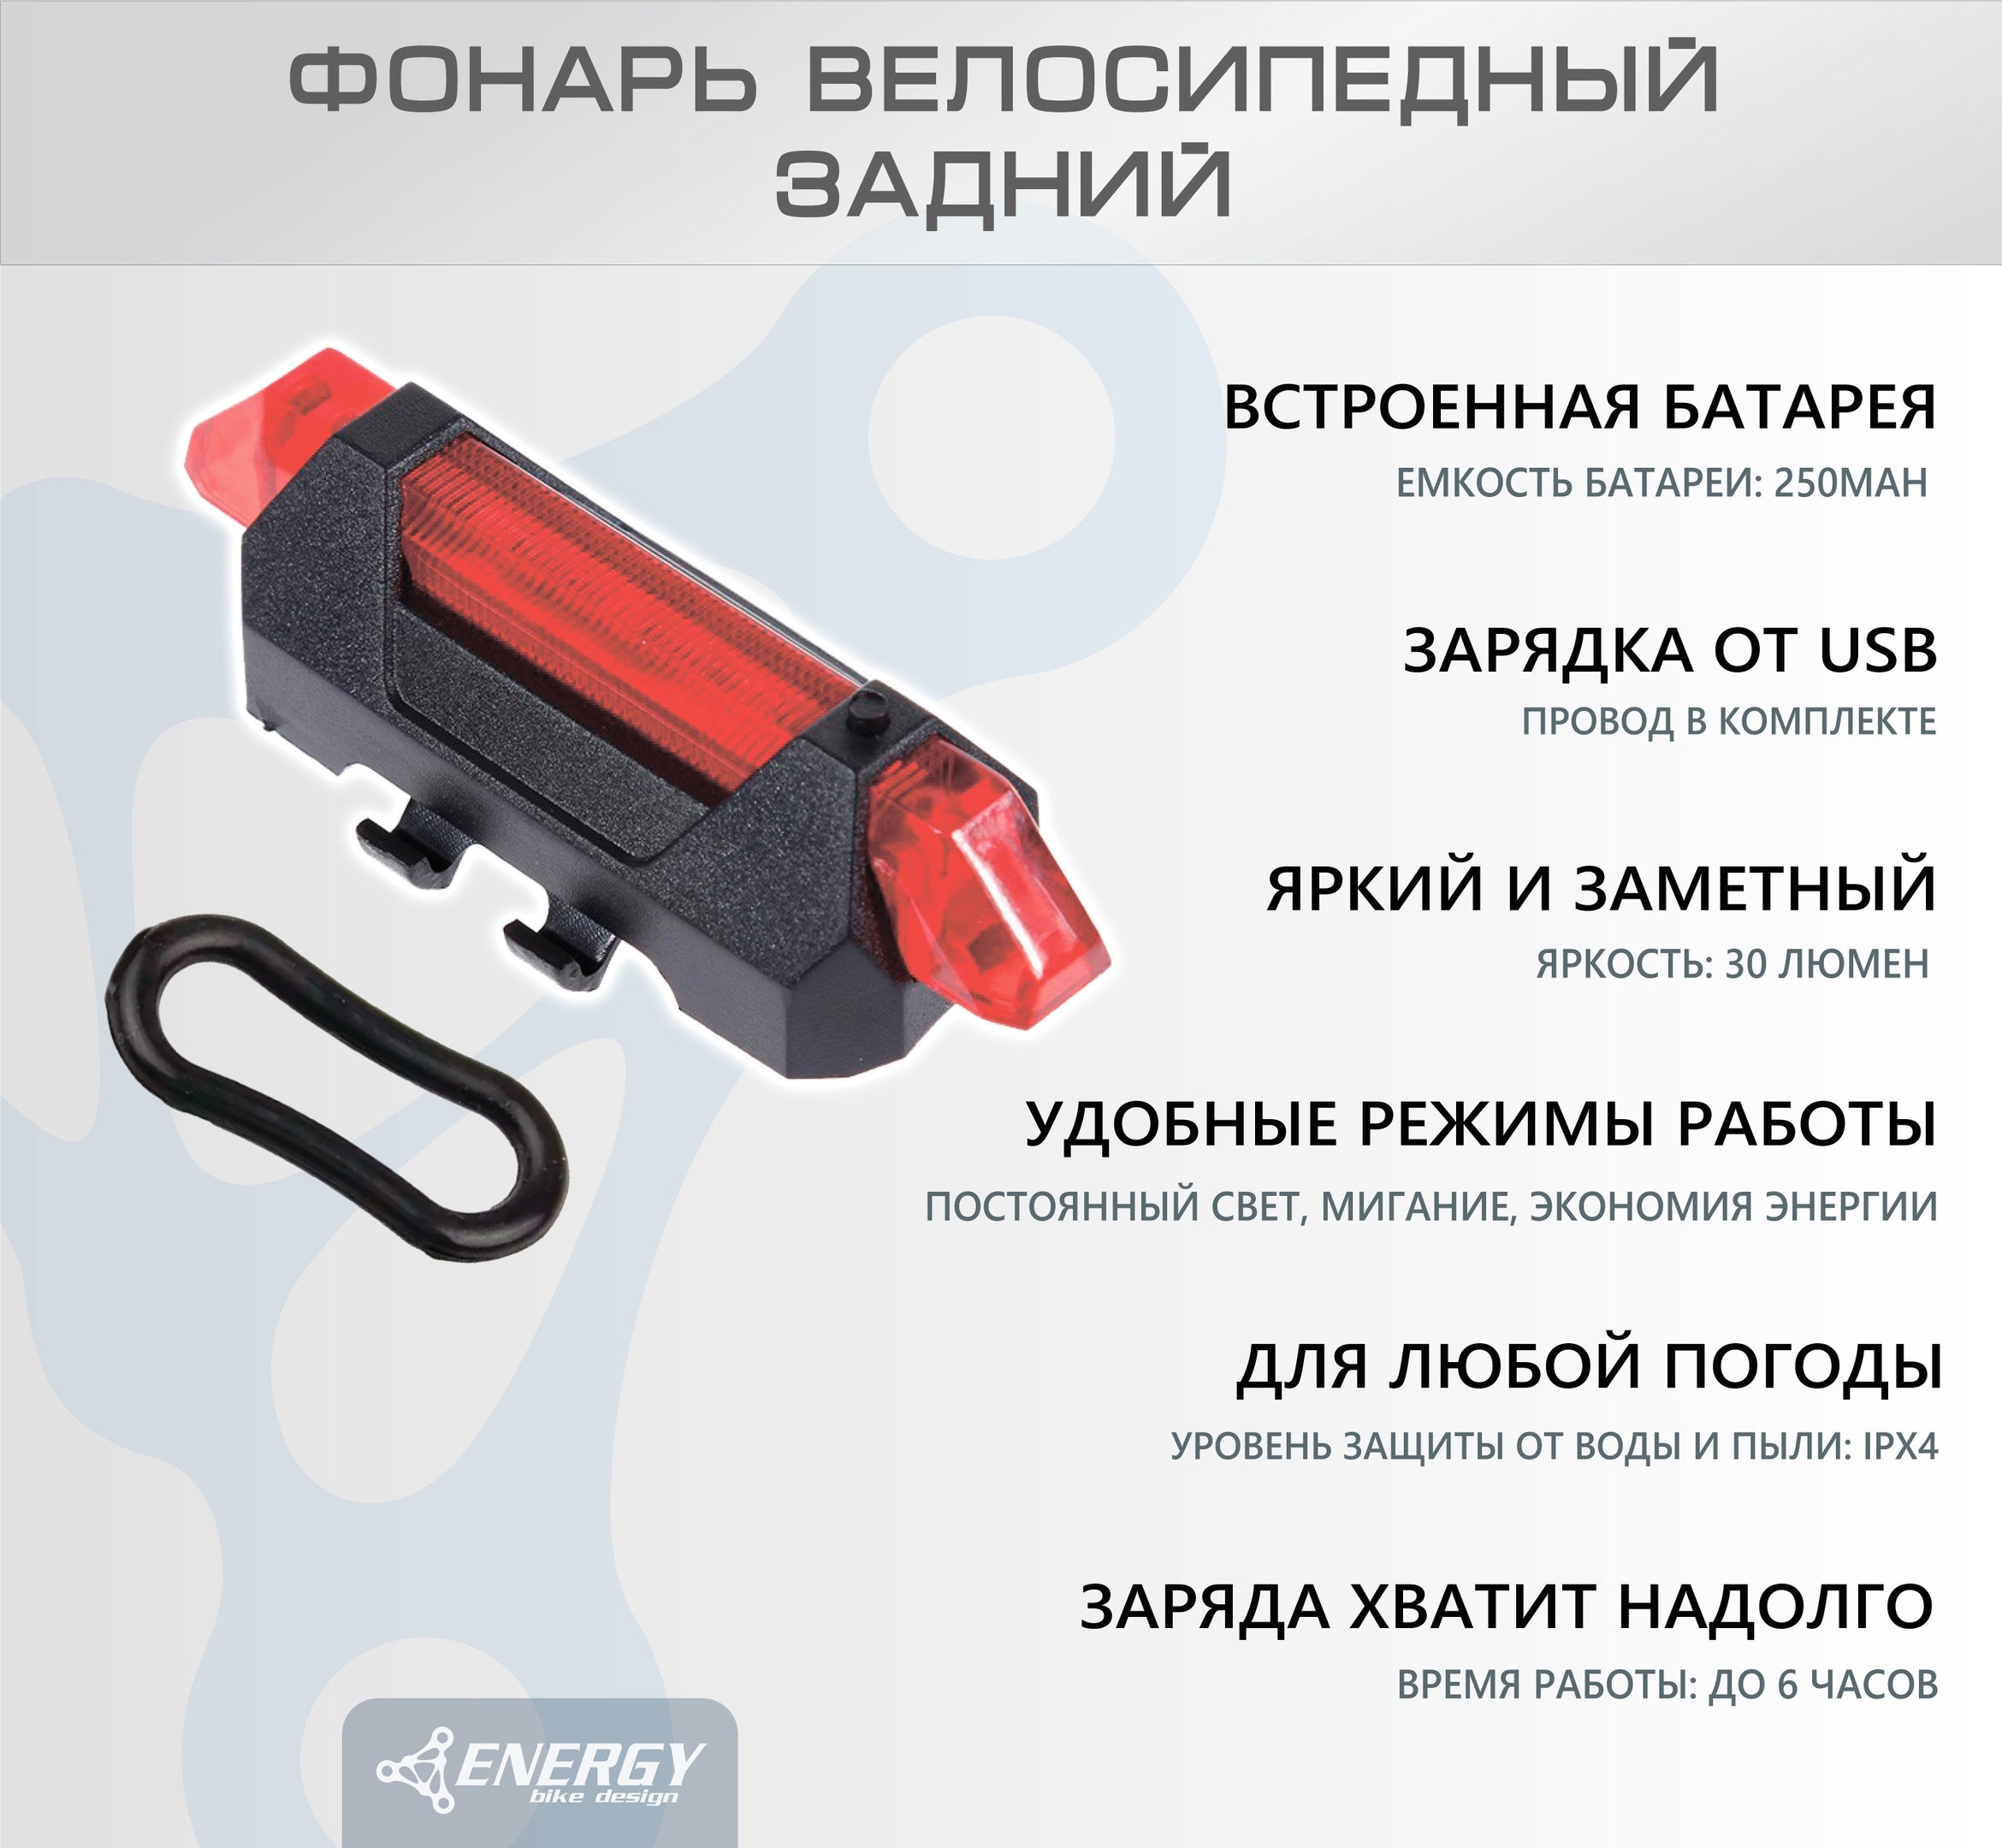 ФонарьвелосипедныйзаднийEnergyMISTLED,30lumen,красный,4режима,USB,ABSкорпус